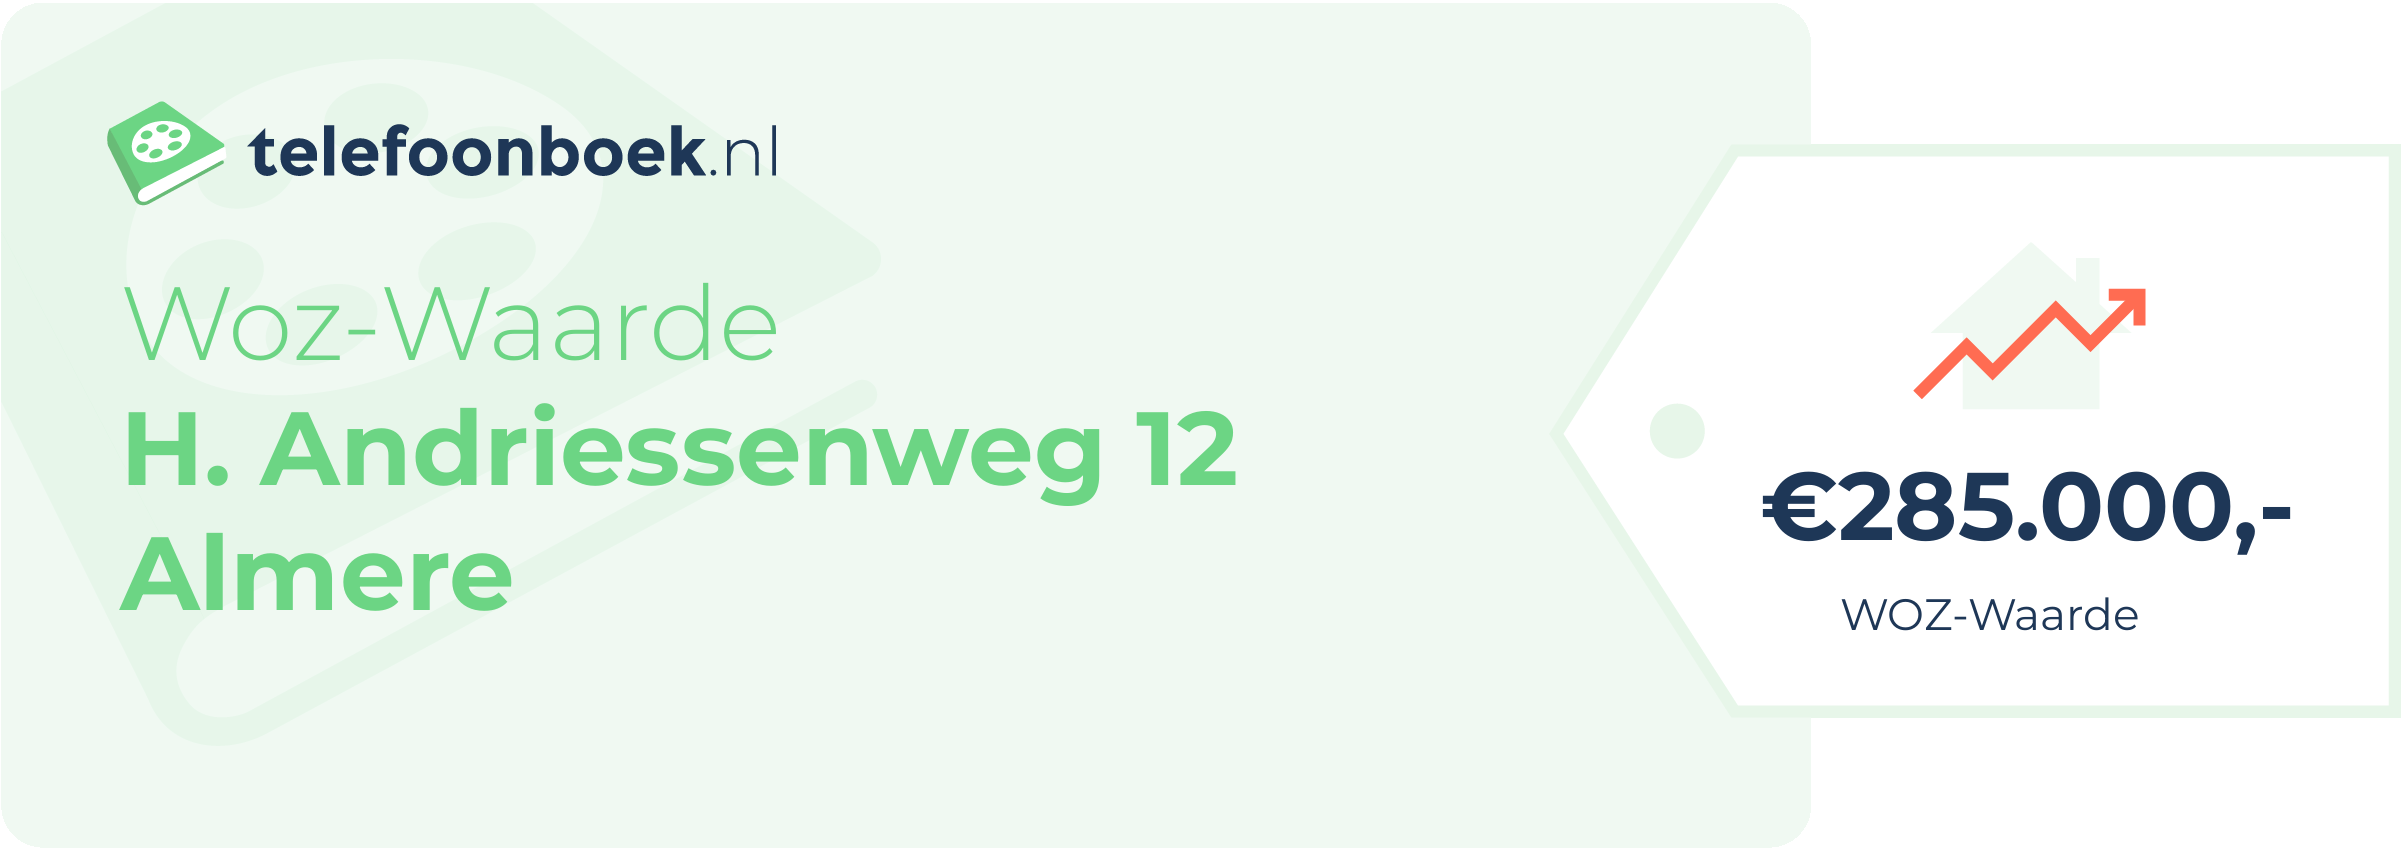 WOZ-waarde H. Andriessenweg 12 Almere